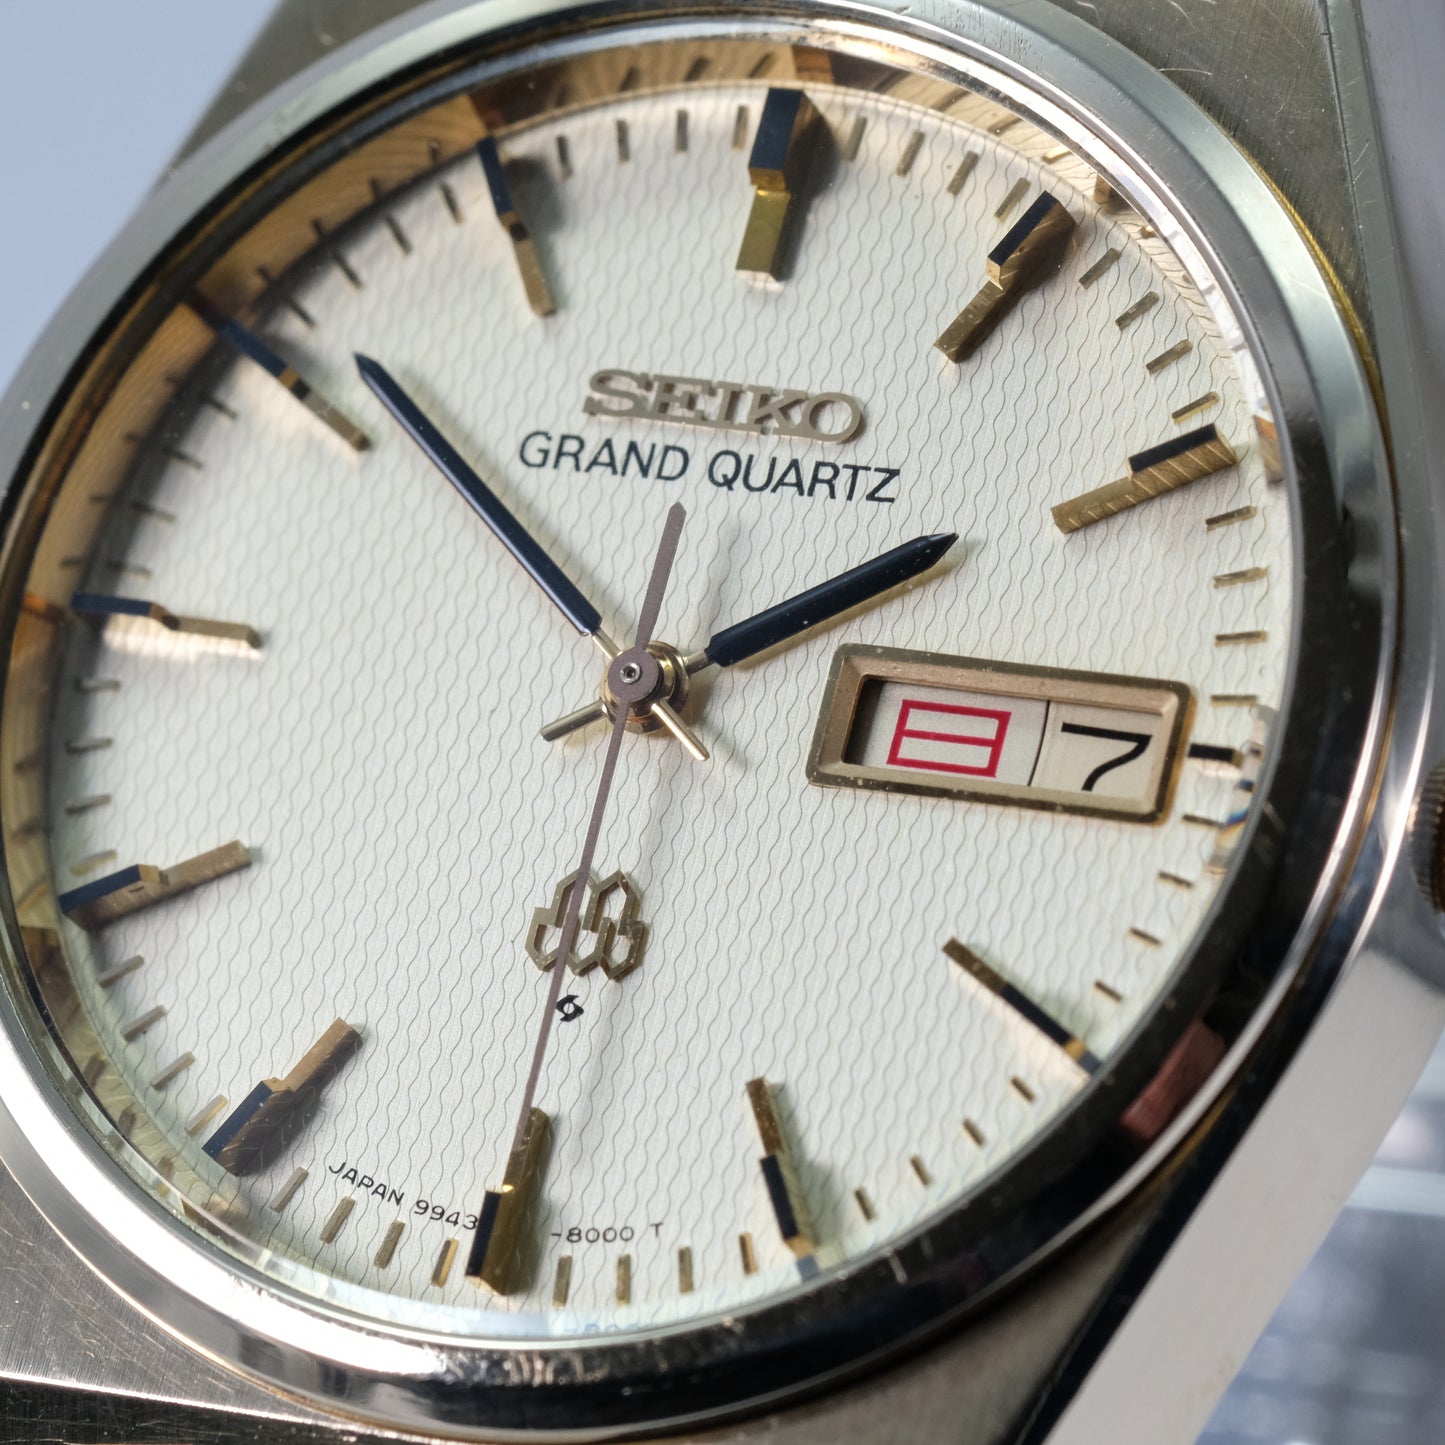 1978 Seiko Grand Quartz 9943-8000